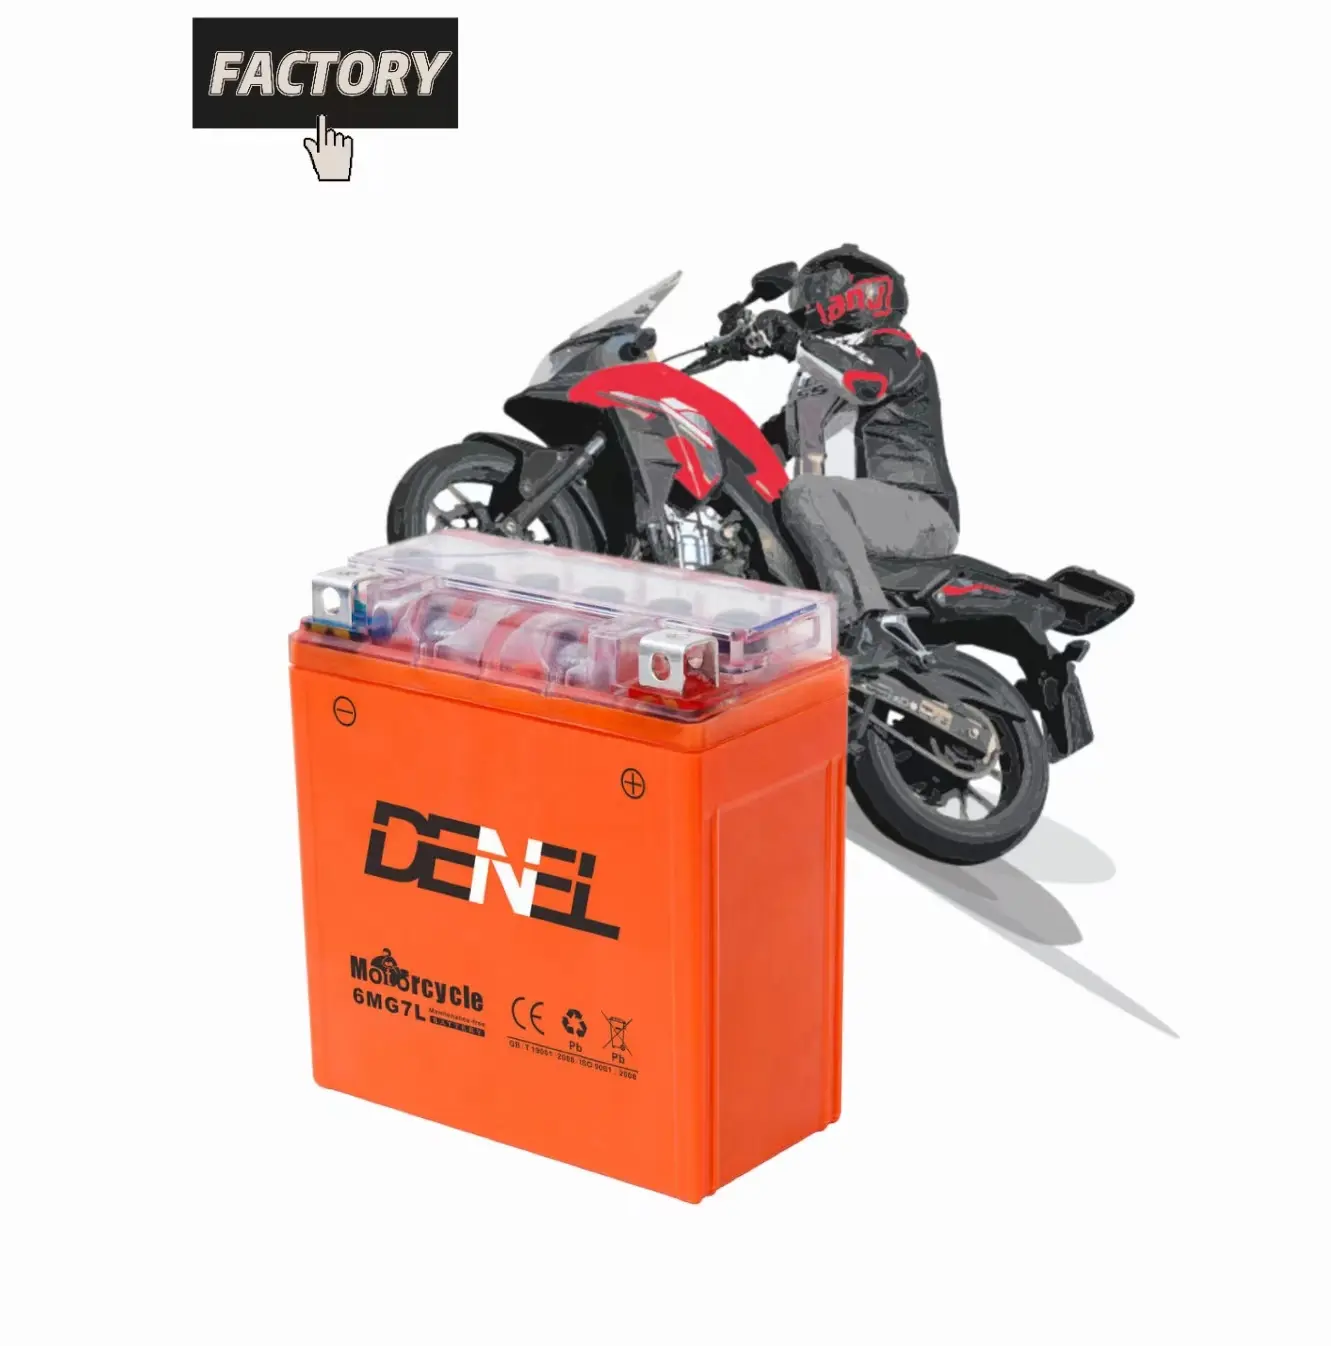 6mg7l gel denel accesorios baterias de plomo acido bateria moto motocicleta bateria